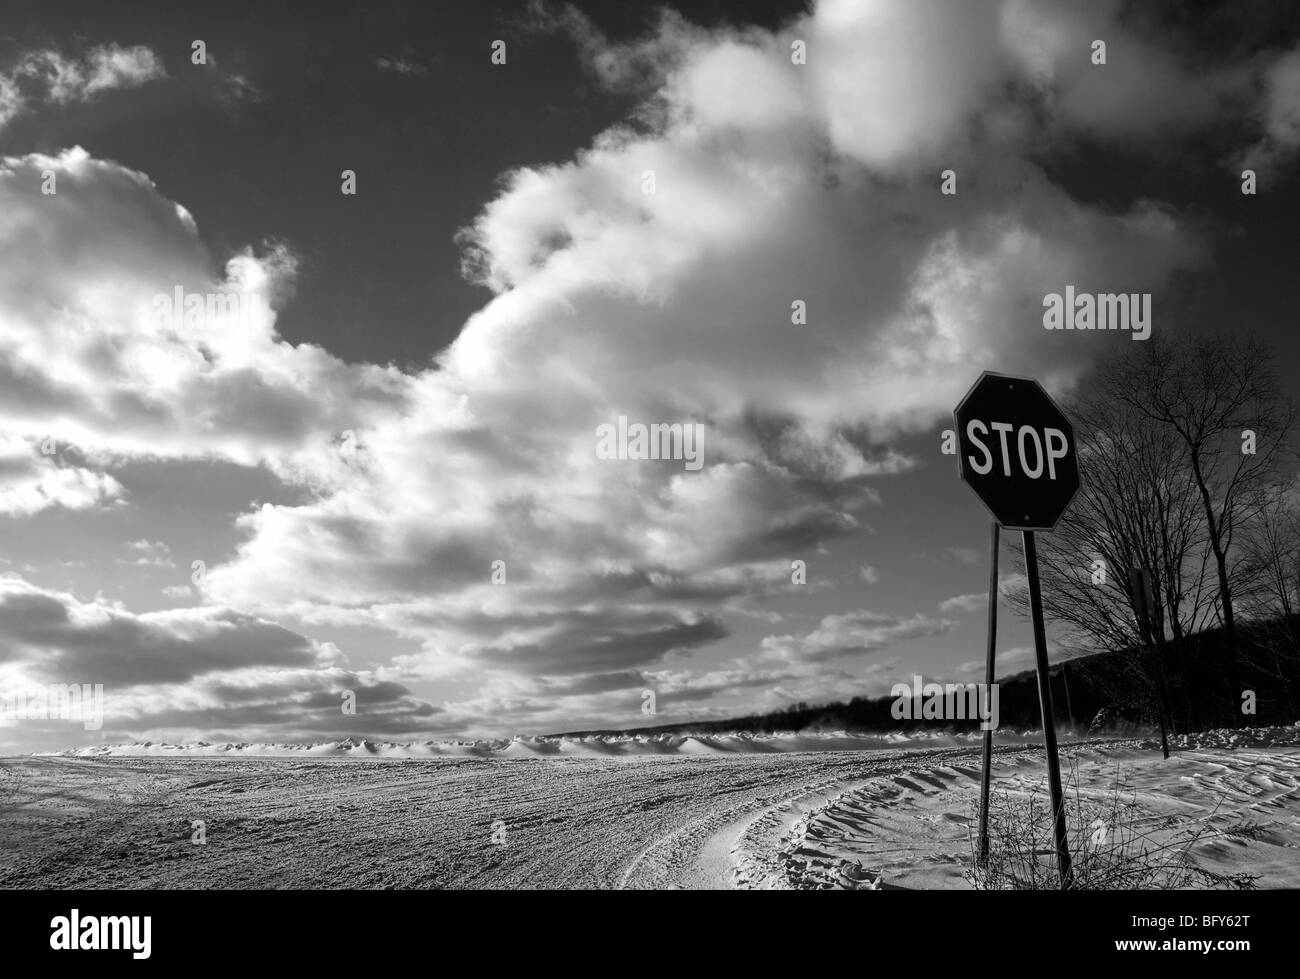 La señal de stop en carreteras cubiertas de nieve con brillantes nubes cielo espectacular Foto de stock